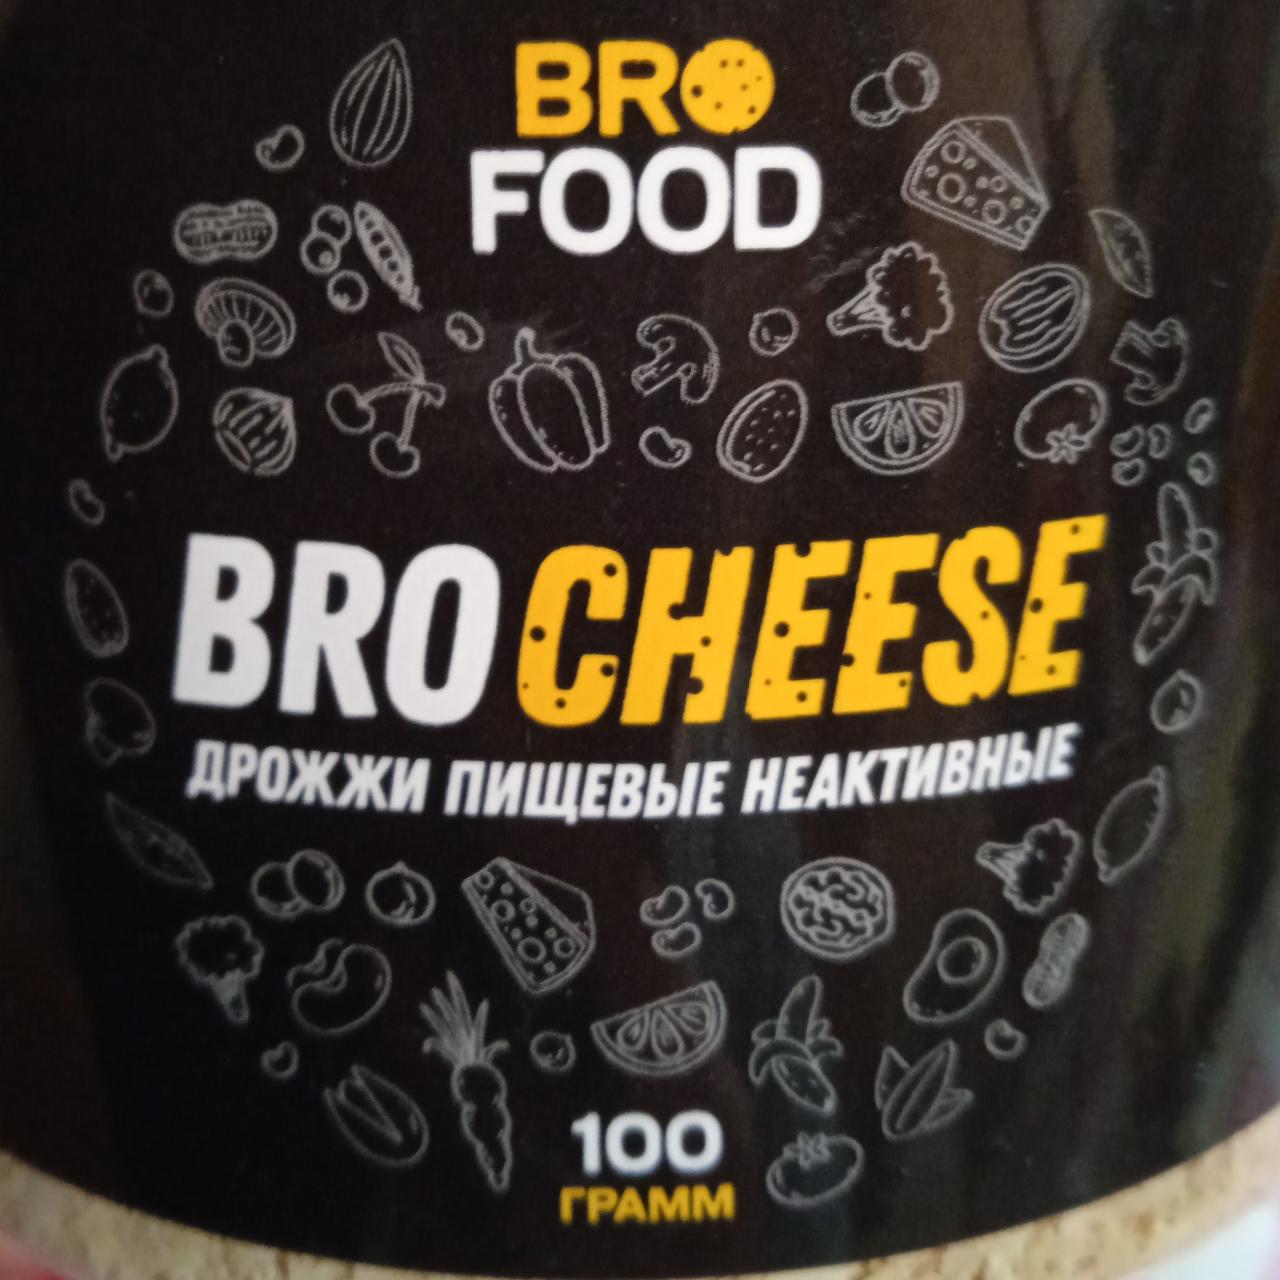 Фото - Bro cheese дрожжи пищевые неактивные Bro food